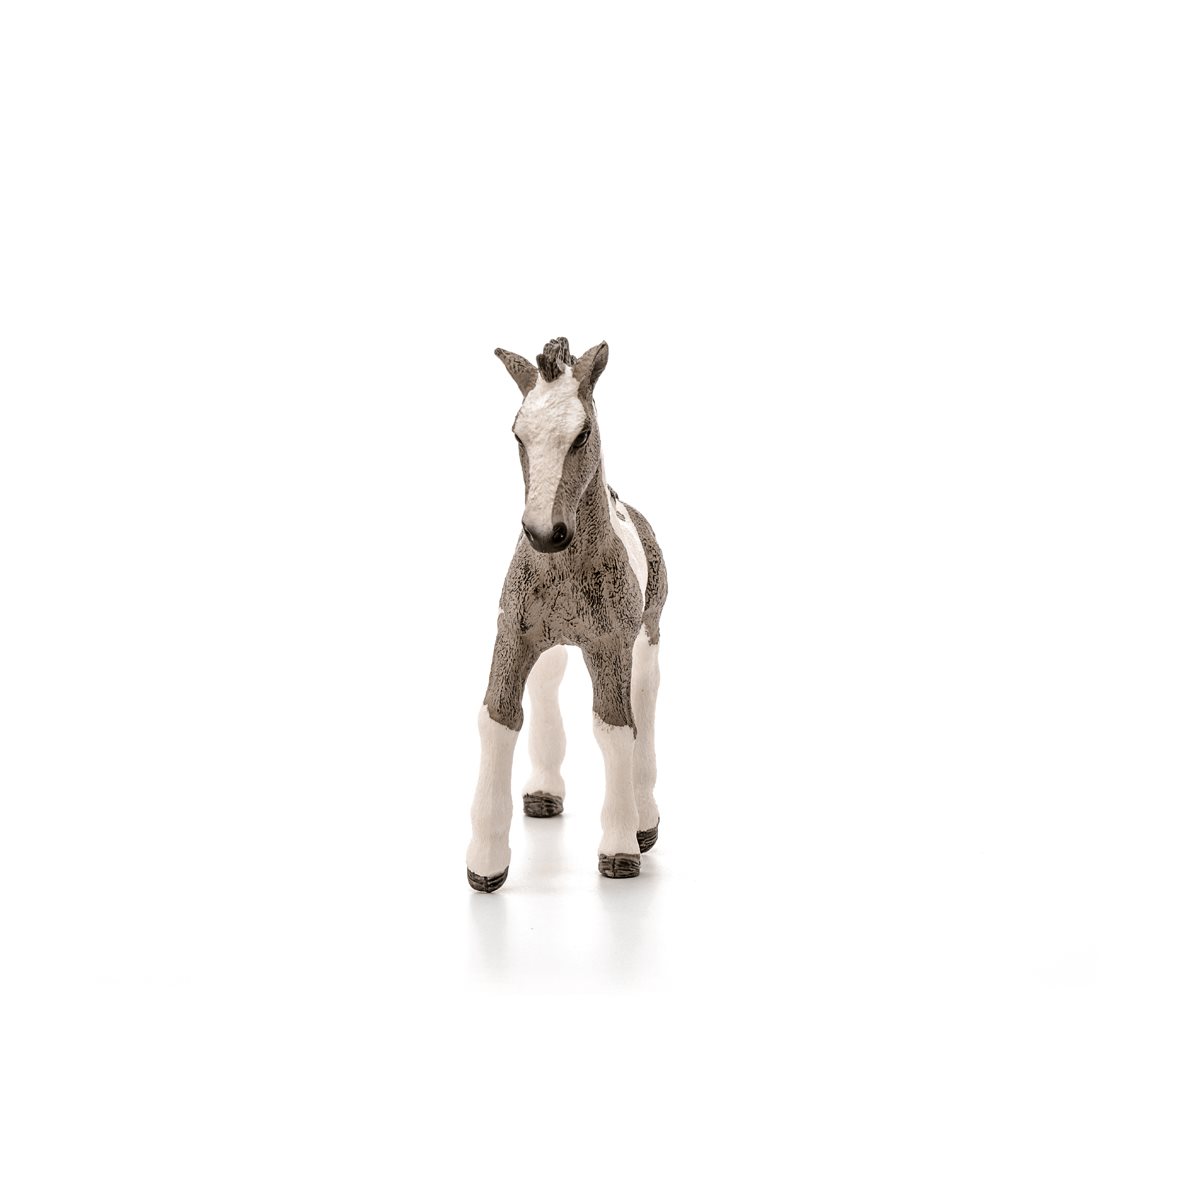 Schleich Figurine Farm World Tinker Stallion